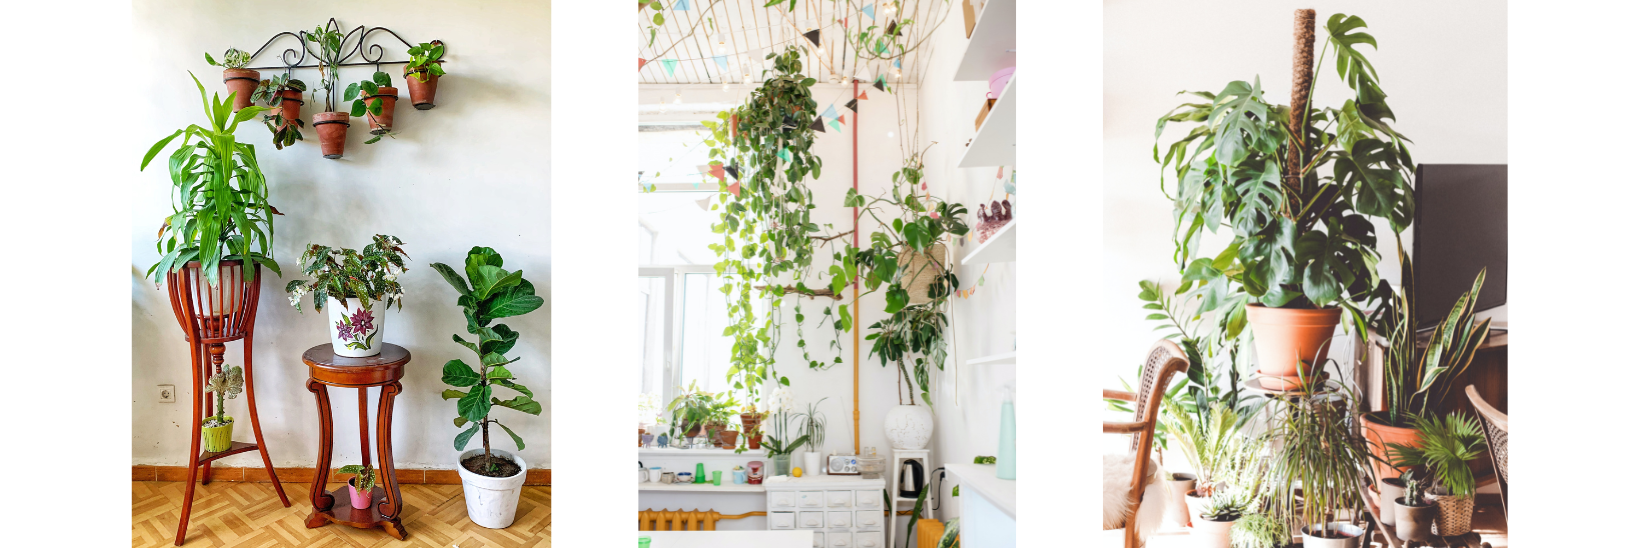 6 Creative Ways to Display Indoor Plants in Your Home